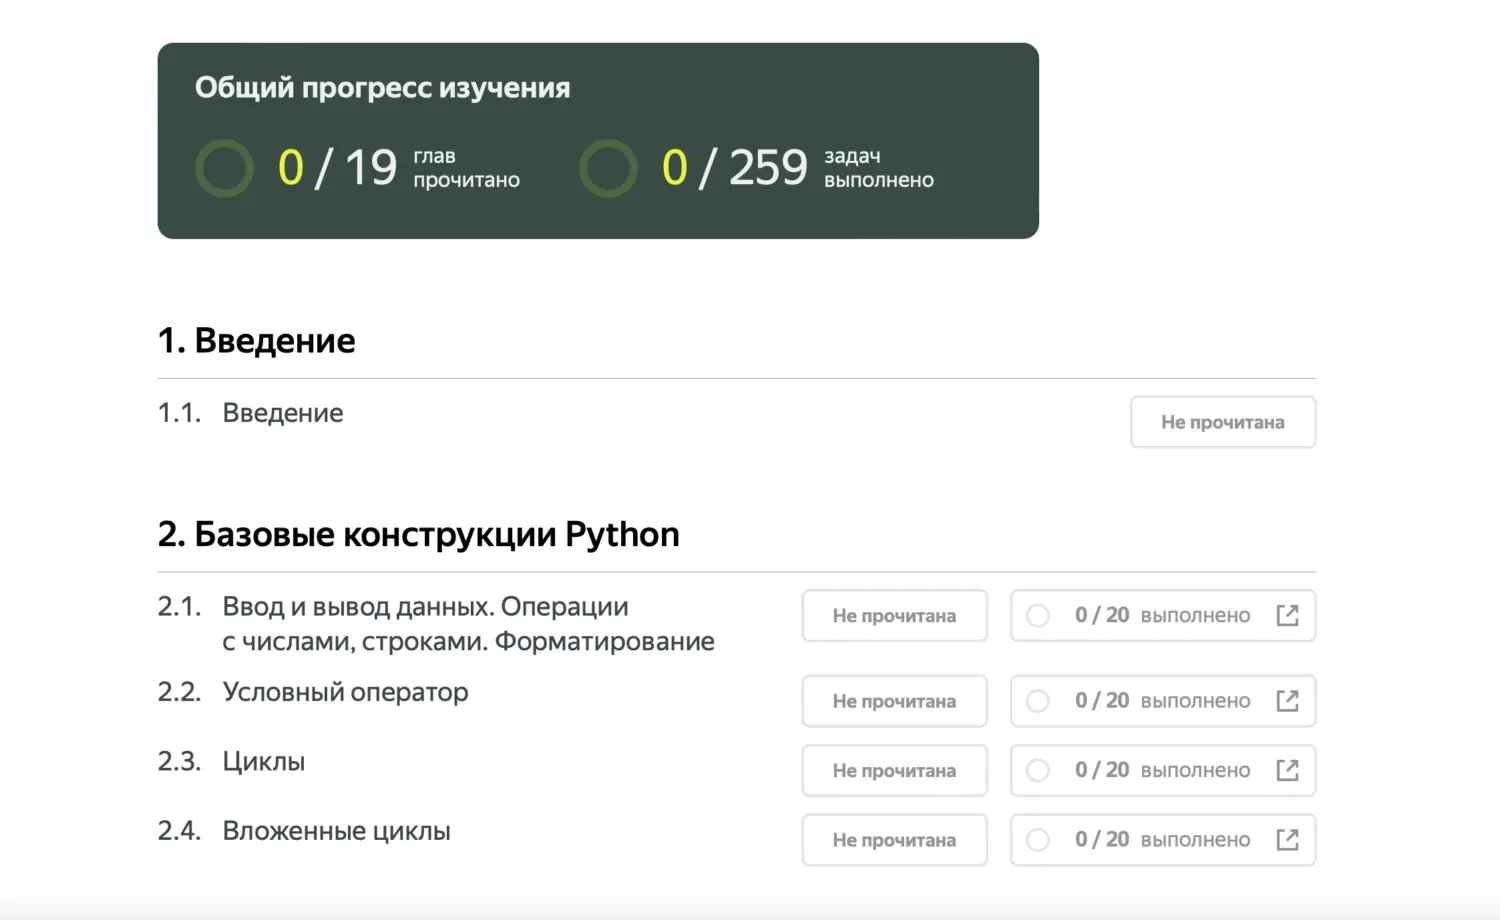 Яндекс Практикум представил первый цифровой учебник для медицинских ВУЗов (zagruzhennoe 1)